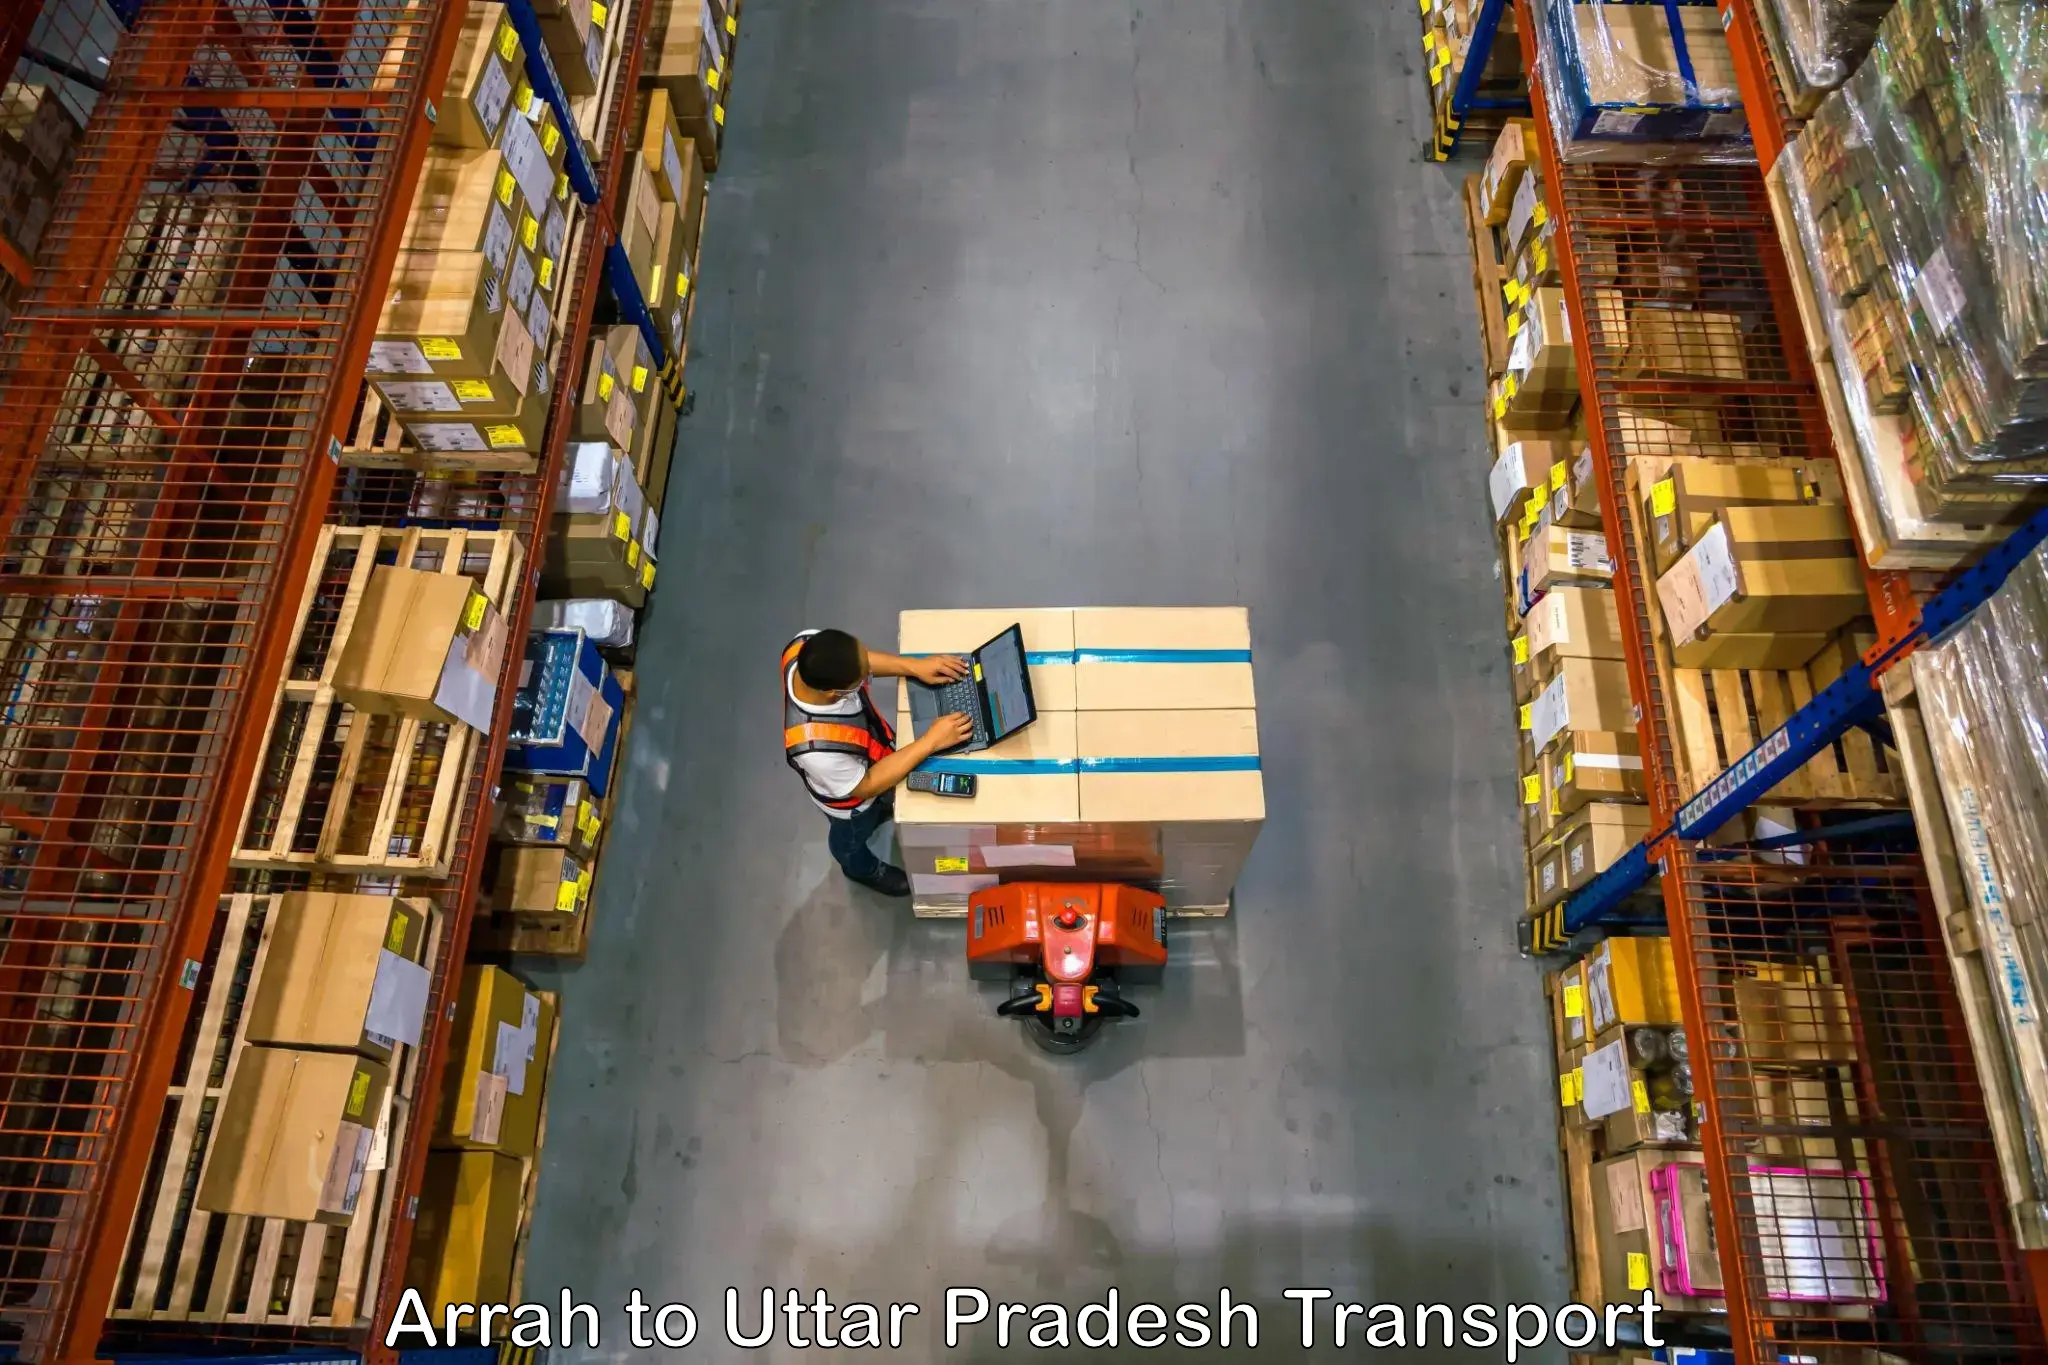 Domestic goods transportation services Arrah to Chandpur